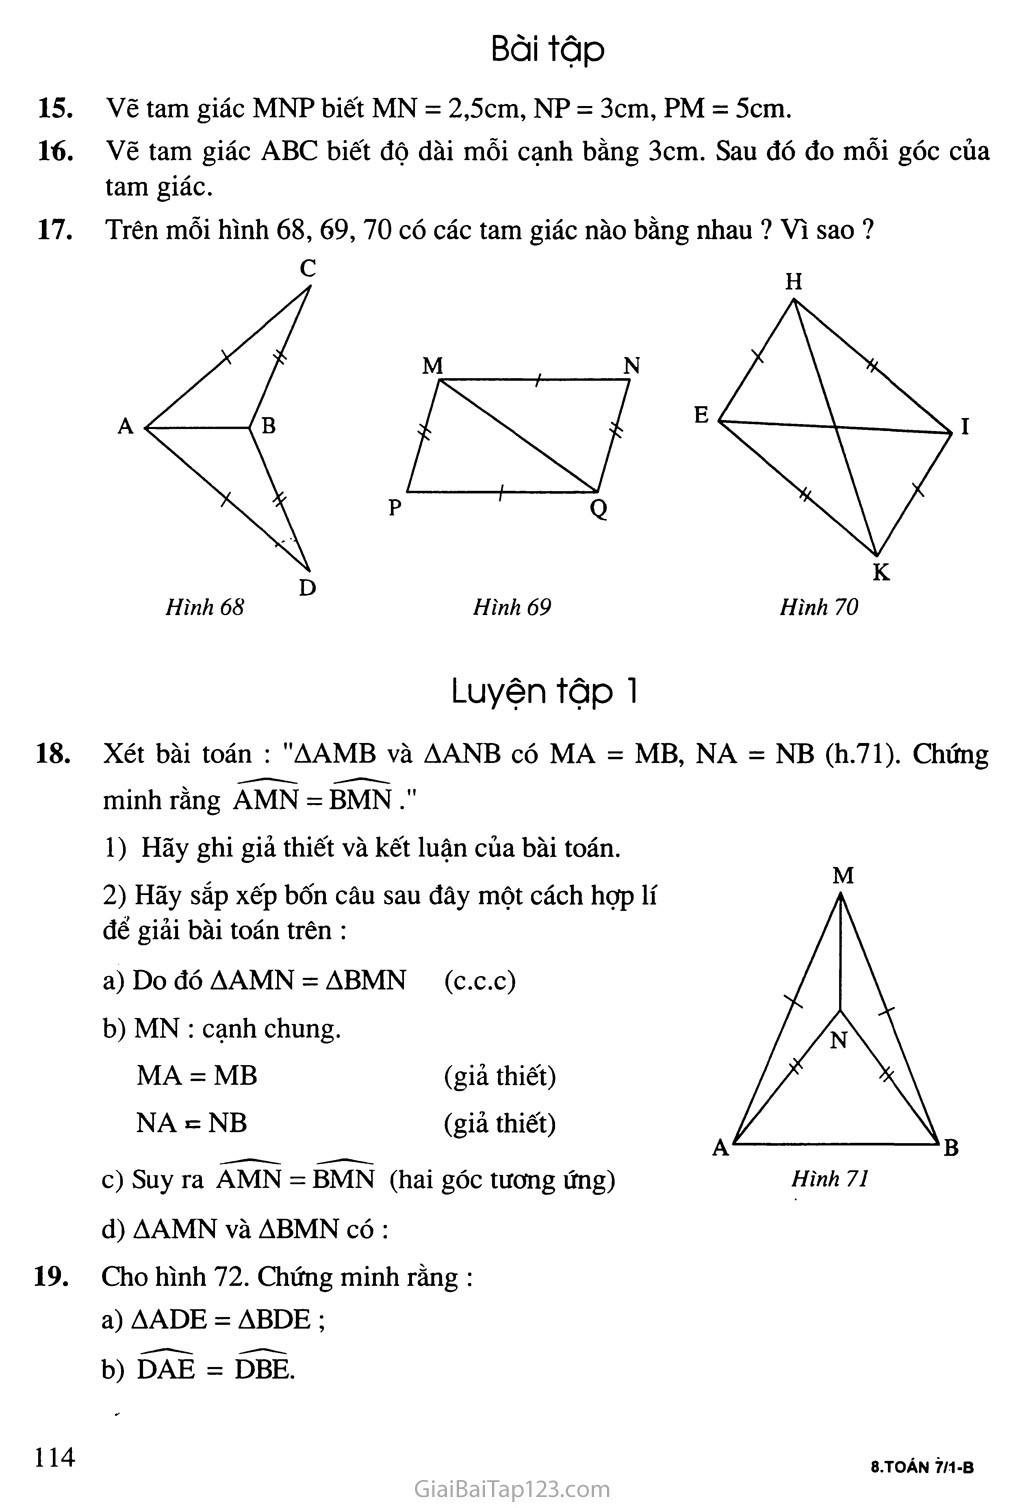 Bài 3. Trường hợp bằng nhau thứ nhất của tam giác: cạnh - cạnh - cạnh (c. c. c) trang 3